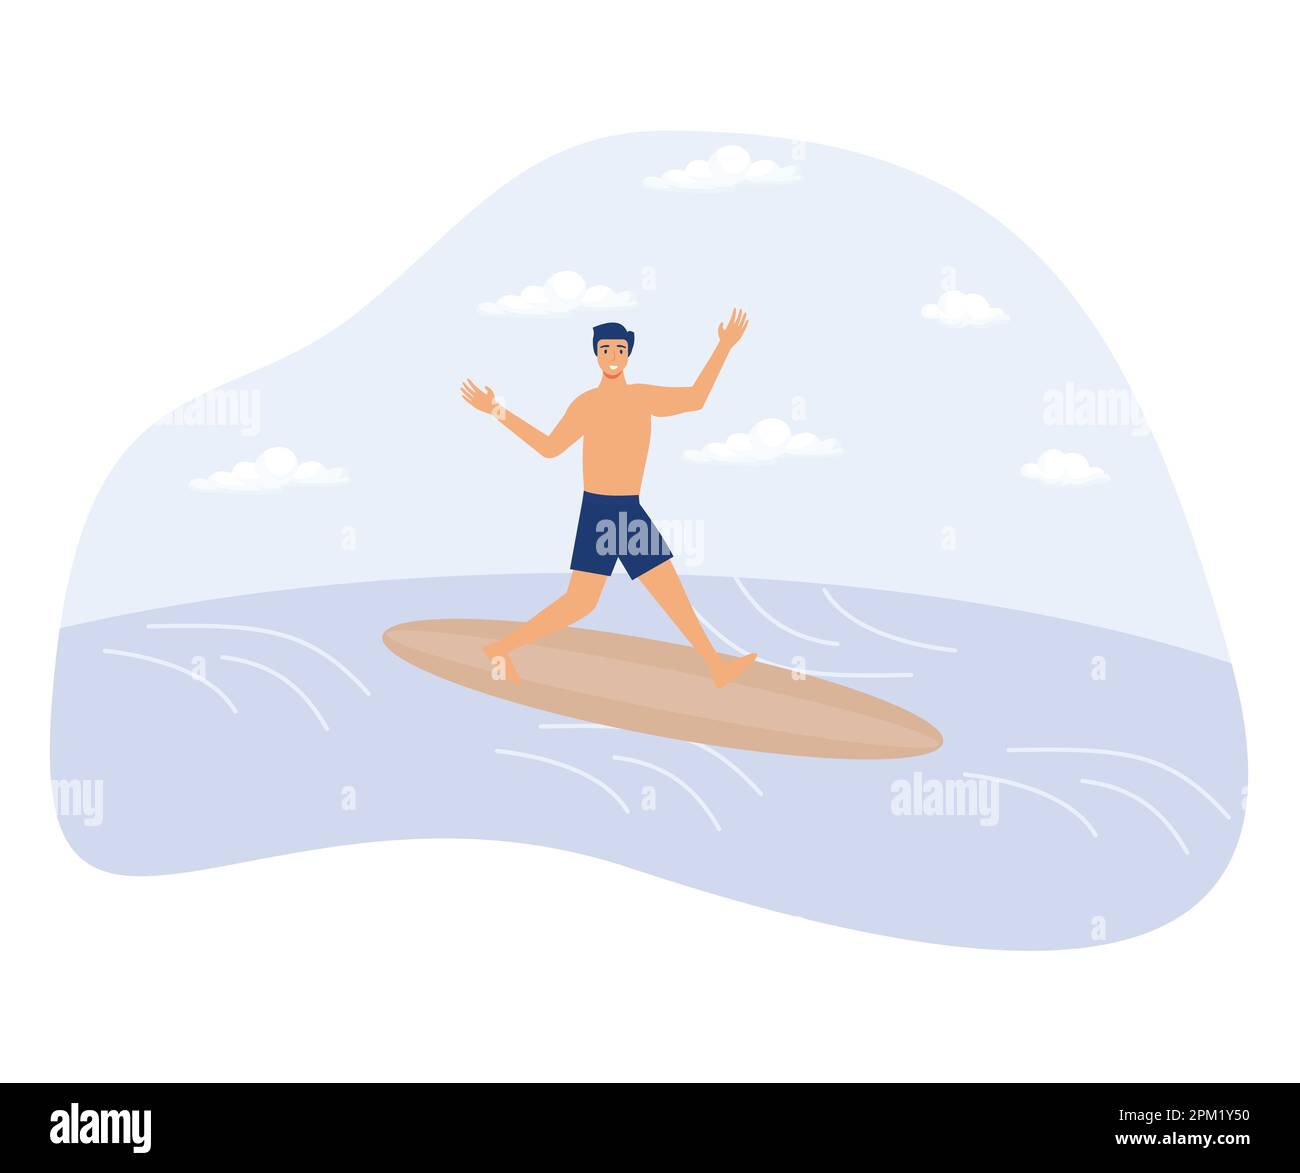 Concepto de deporte acuático, esquí acuático, surf y vela, estilo de vida activo, aventura de verano, traje de baño, club de yates, ilustración moderna de vector plano Ilustración del Vector